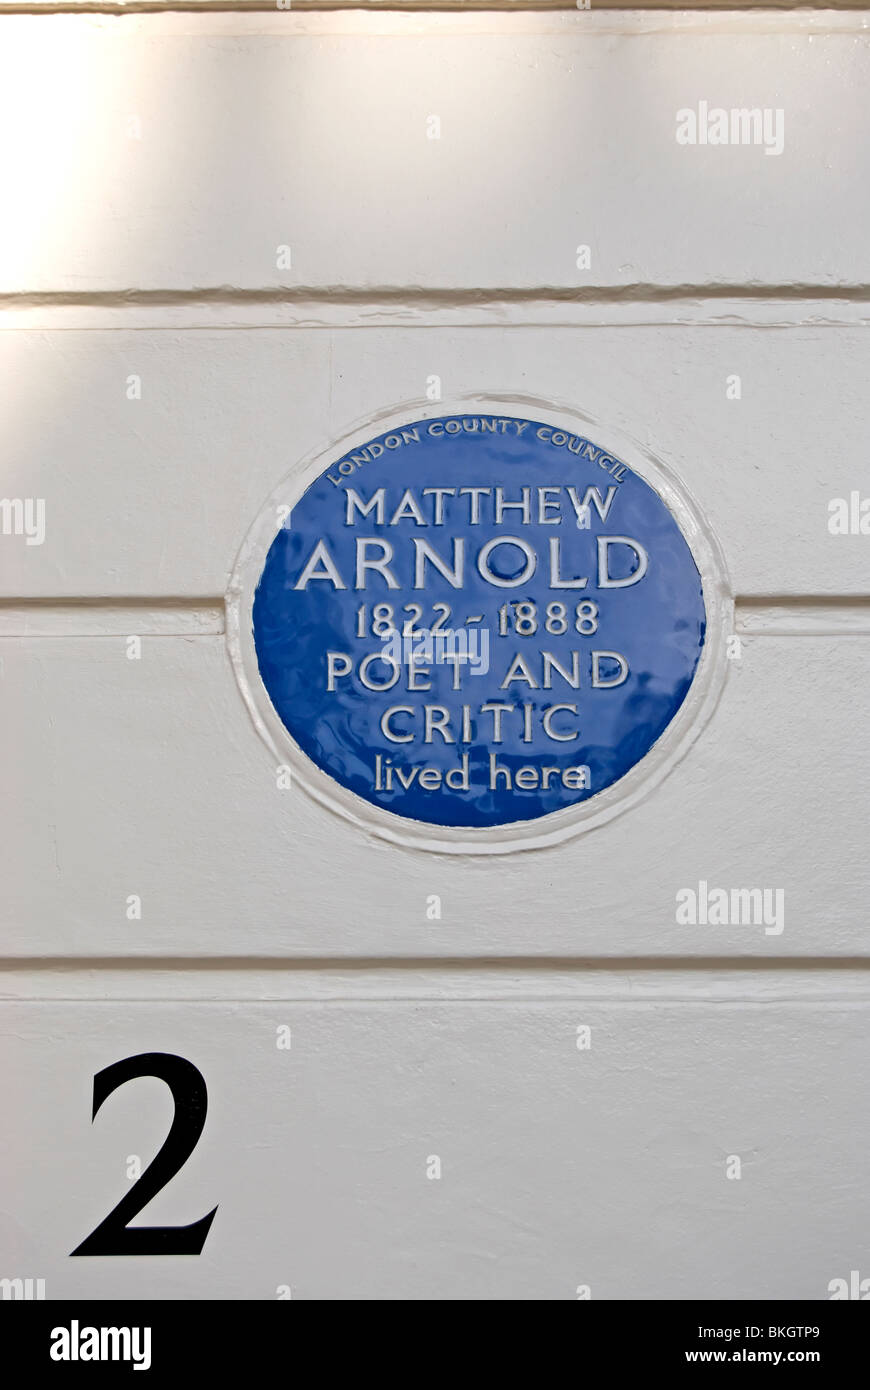 Le london county council blue plaque marquant un accueil de poète et critique Matthew Arnold, à Chester rangée, Belgravia, Londres, Angleterre Banque D'Images